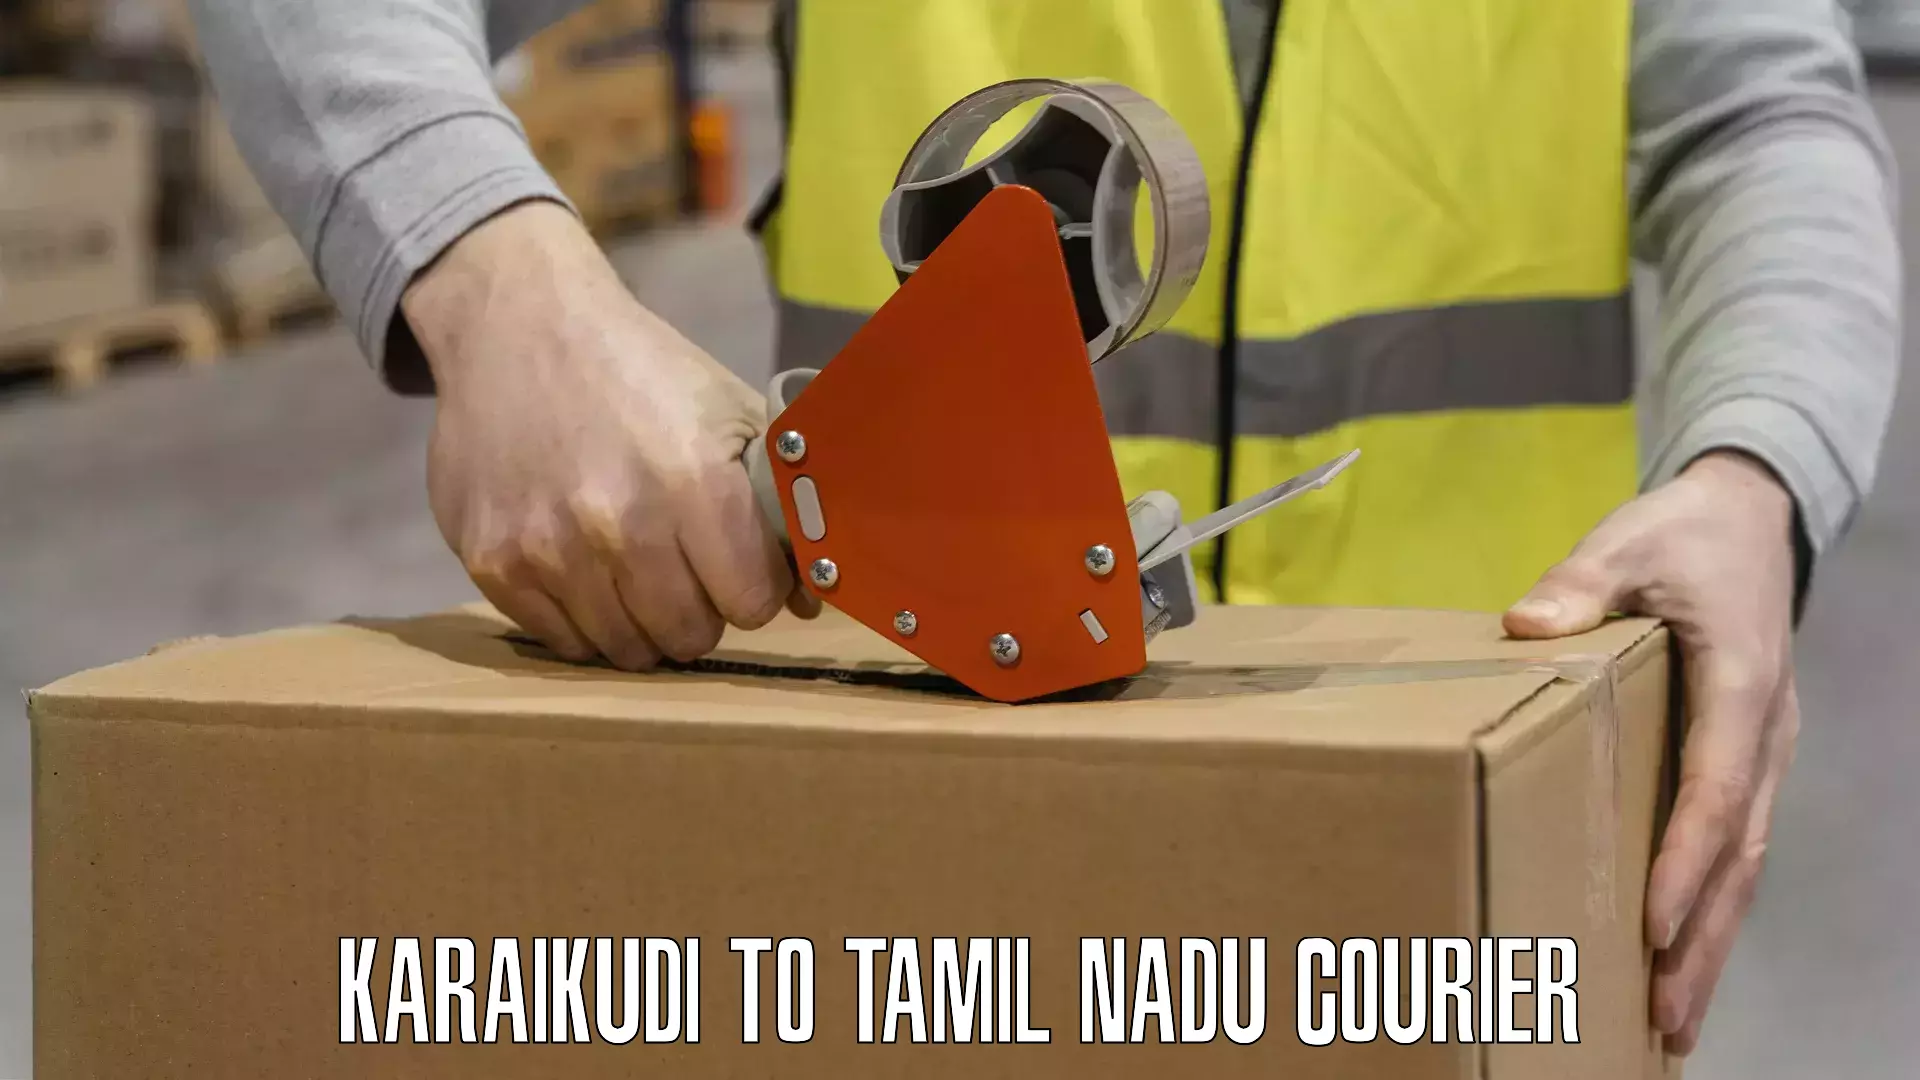 State-of-the-art courier technology Karaikudi to Karaikudi